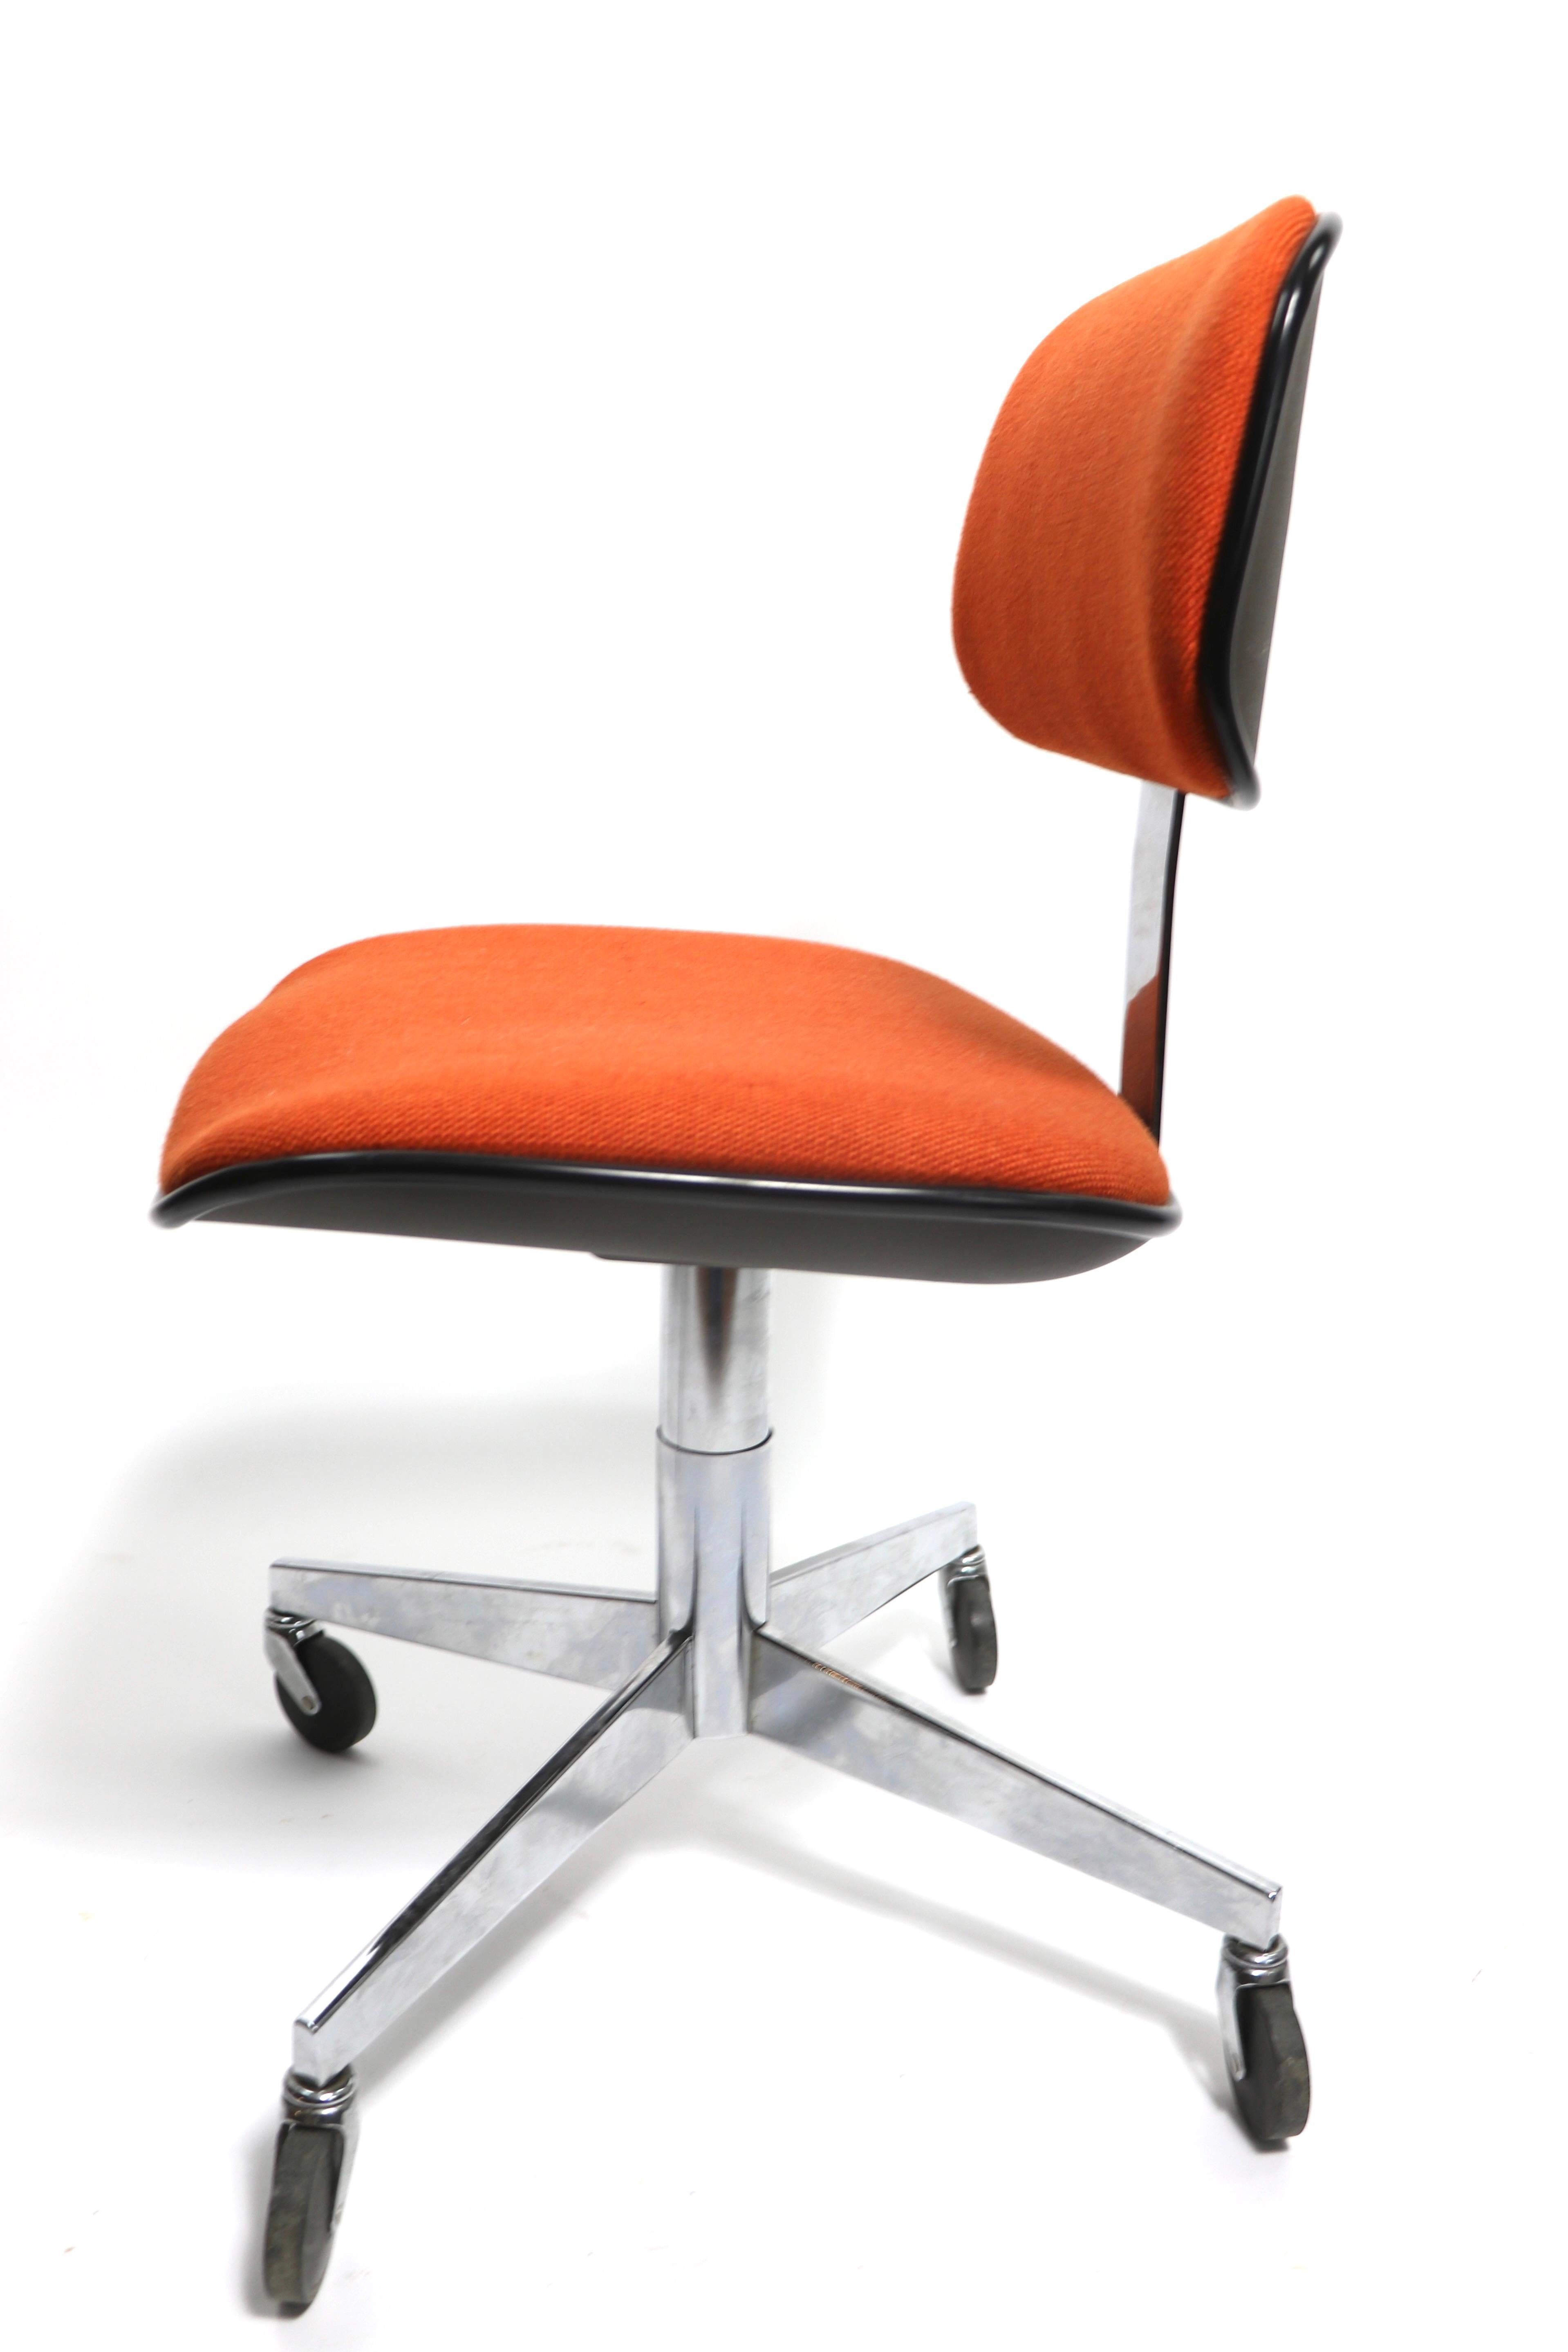 Mid-Century Modern Swivel Desk Chair by Steelcase